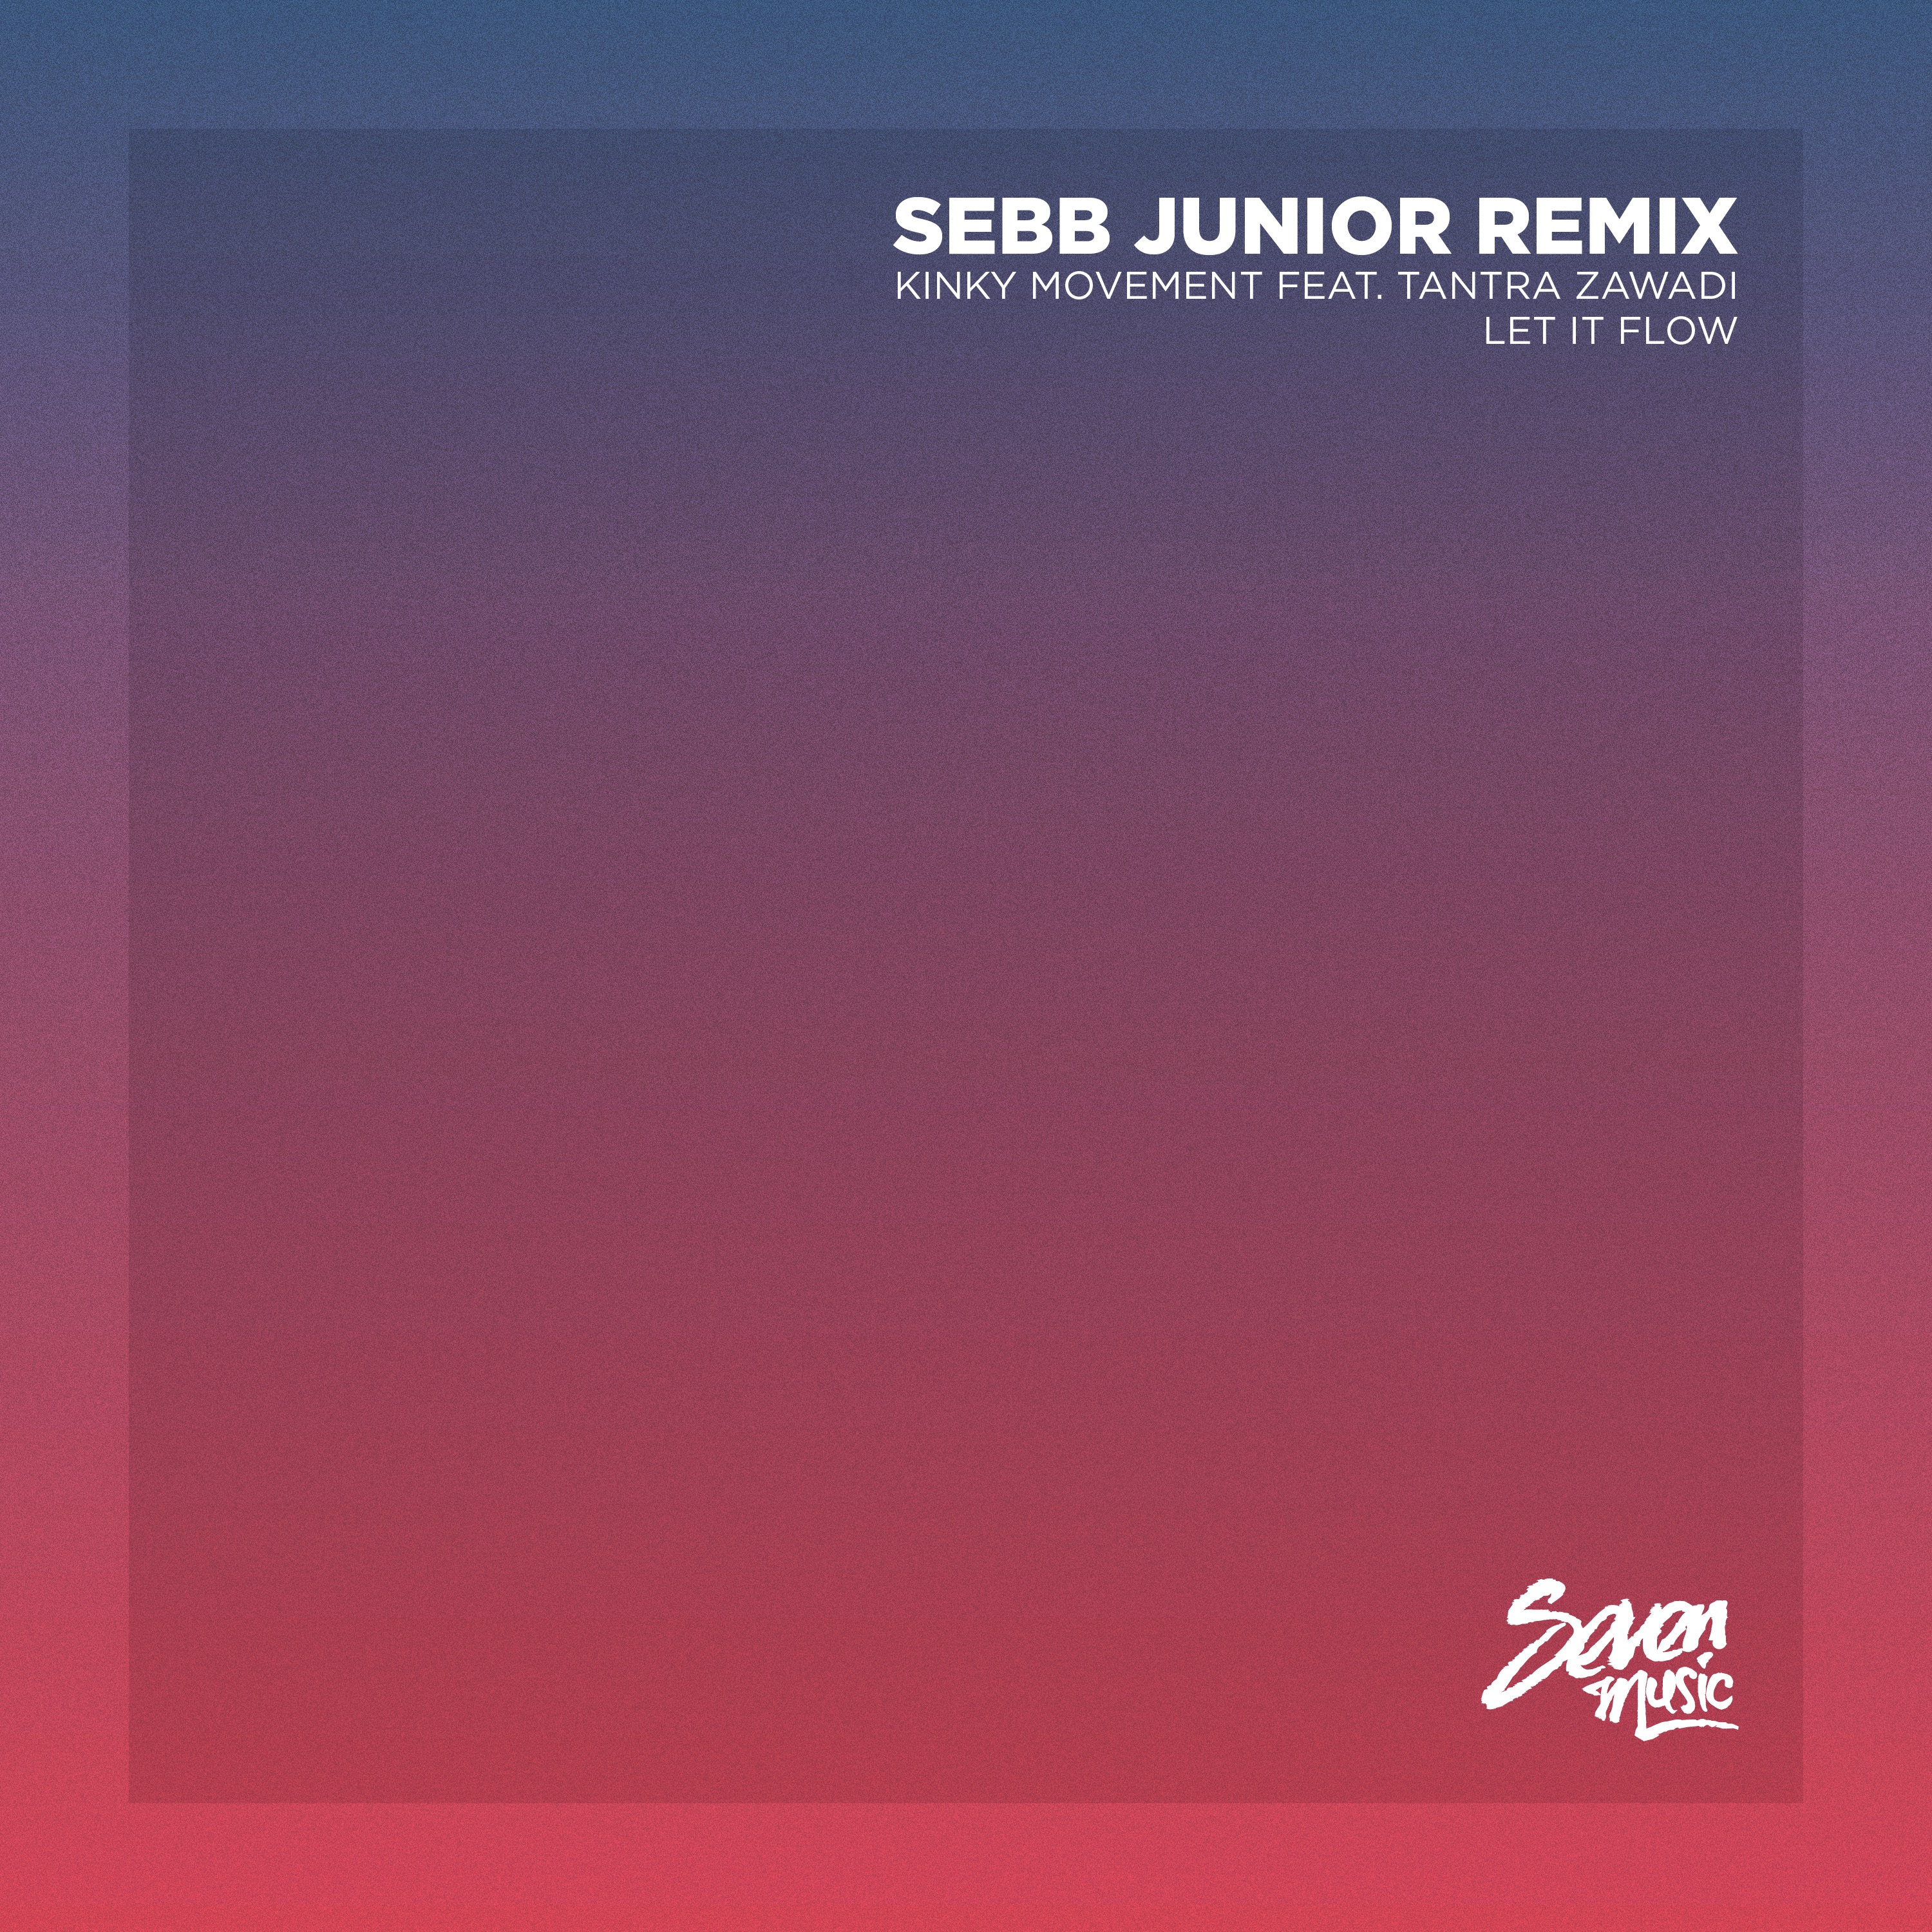 I-download Premiere: Kinky Movement - Let It Flow (Sebb Junior Remix) - Seven Music